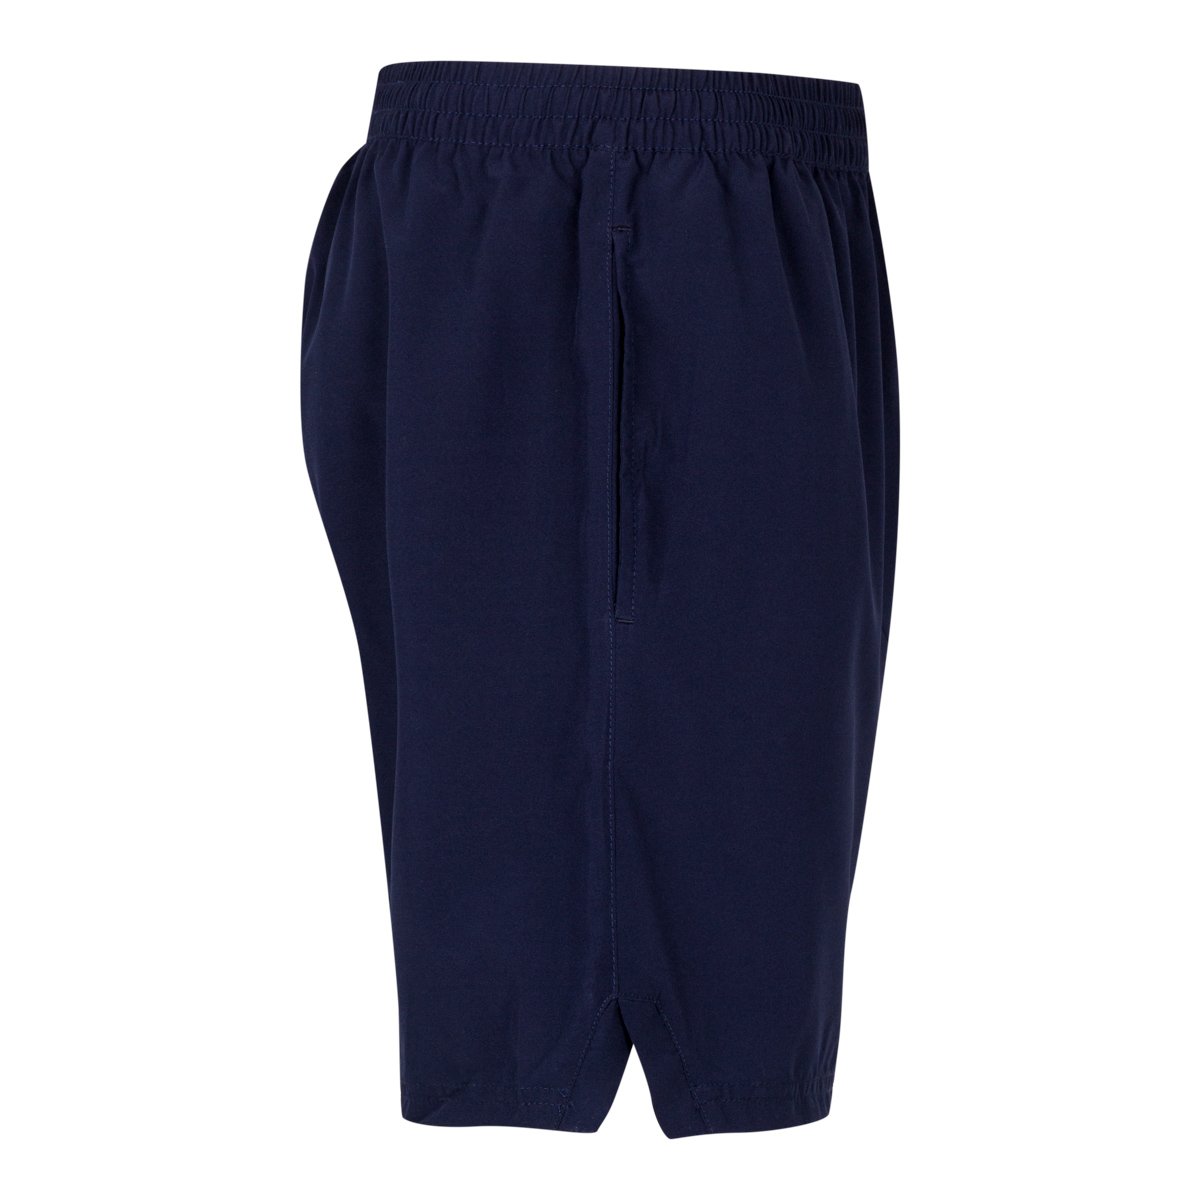 Pantalones cortes Tenis Lambre Azul Hombre - Imagen 3